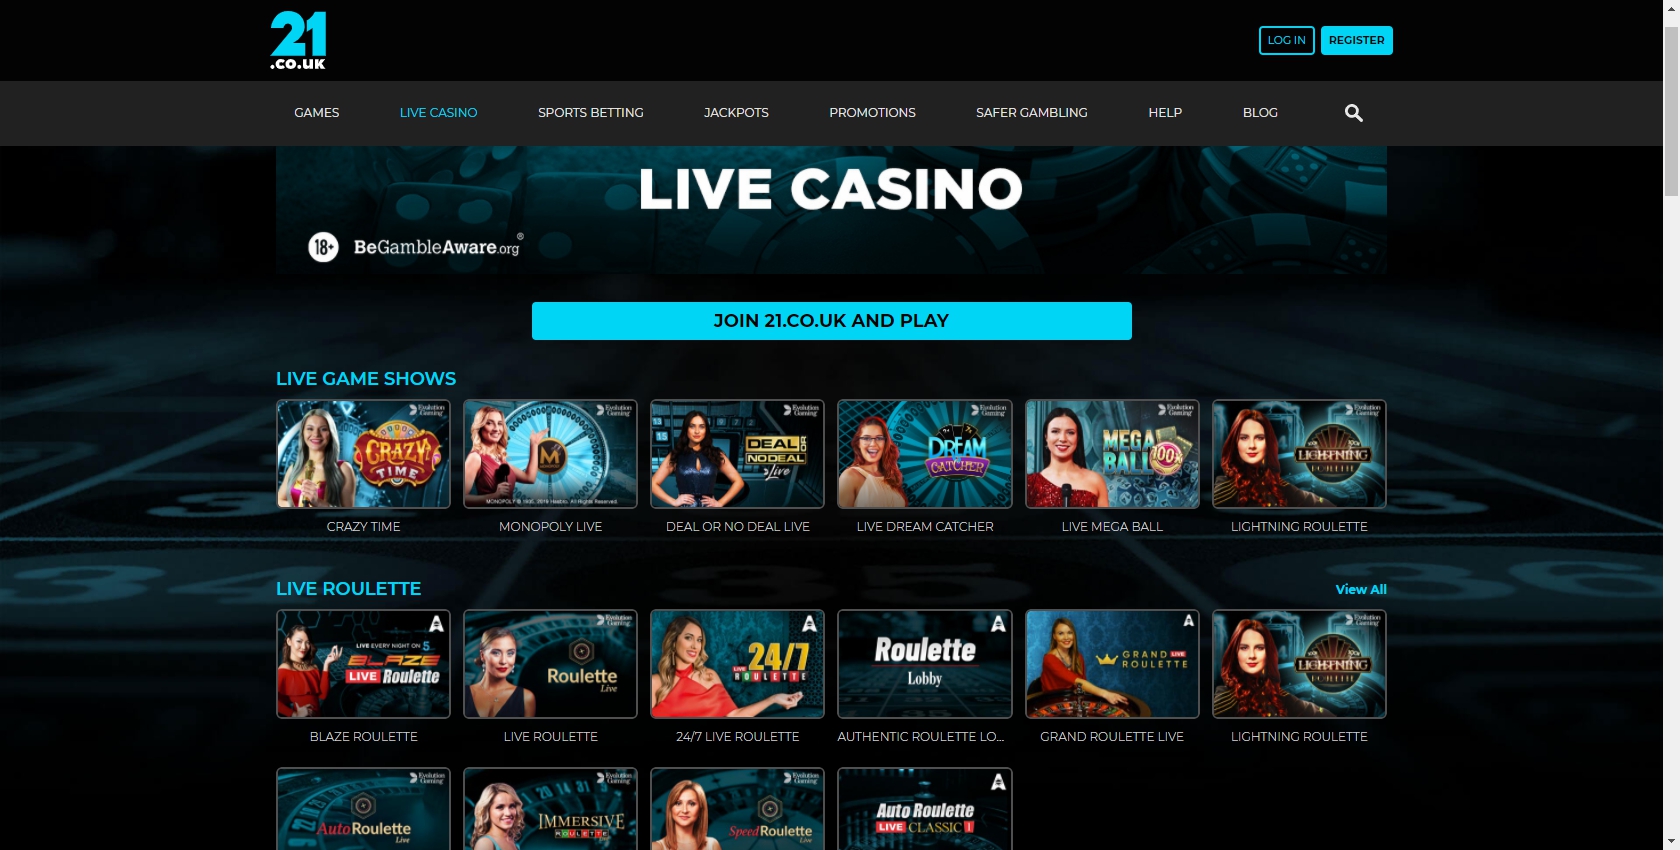 21.co.uk Casino Live Dealer Games